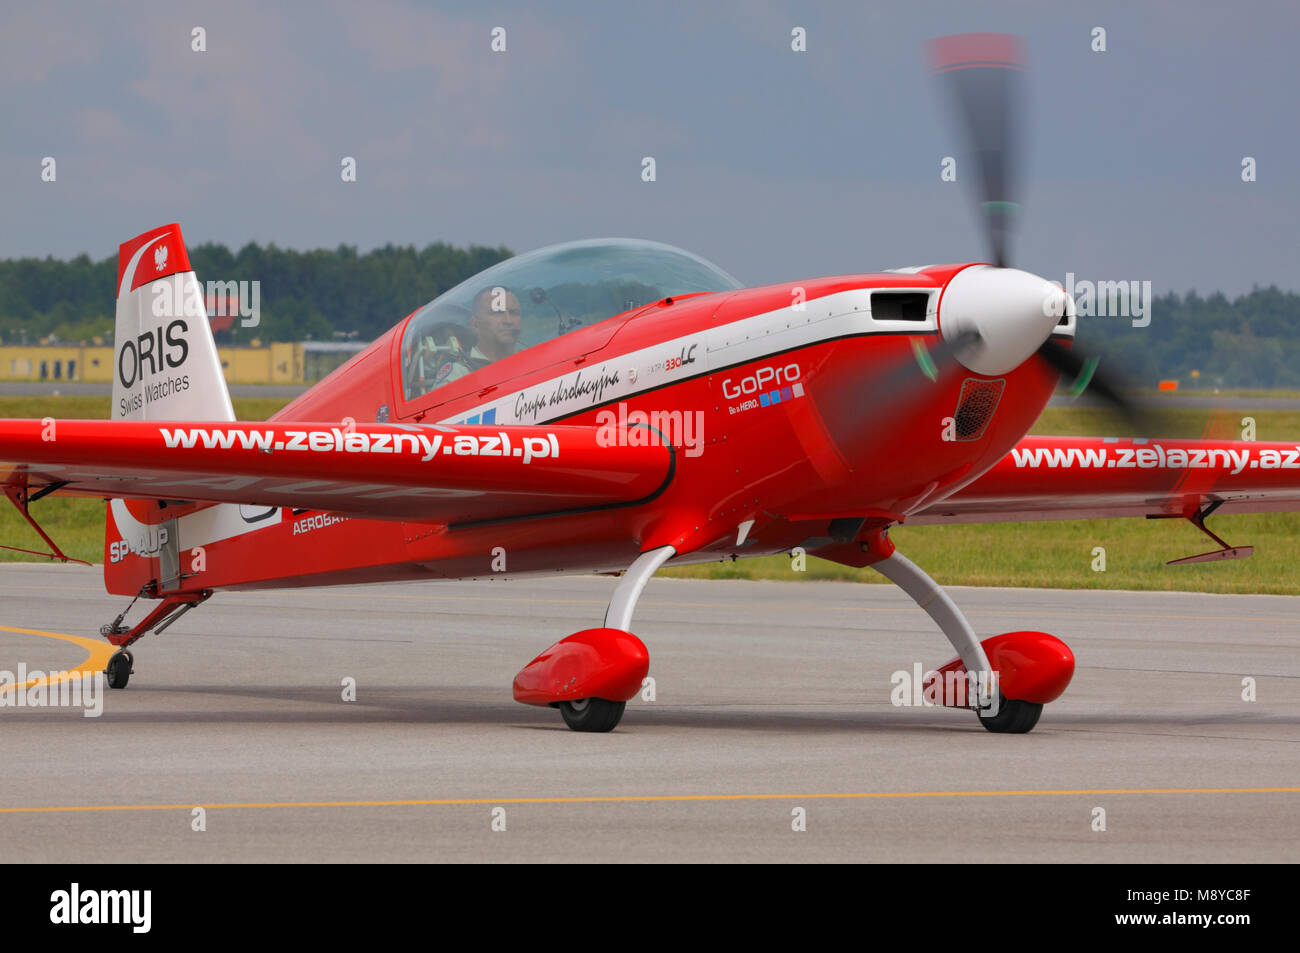 L'utilisation des 330 m. de l'équipe acrobatique Zelazny sur la piste pendant le spectacle aérien international à l'occasion du 90e anniversaire de l'Académie de l'Armée de l'Air polonaise. Banque D'Images